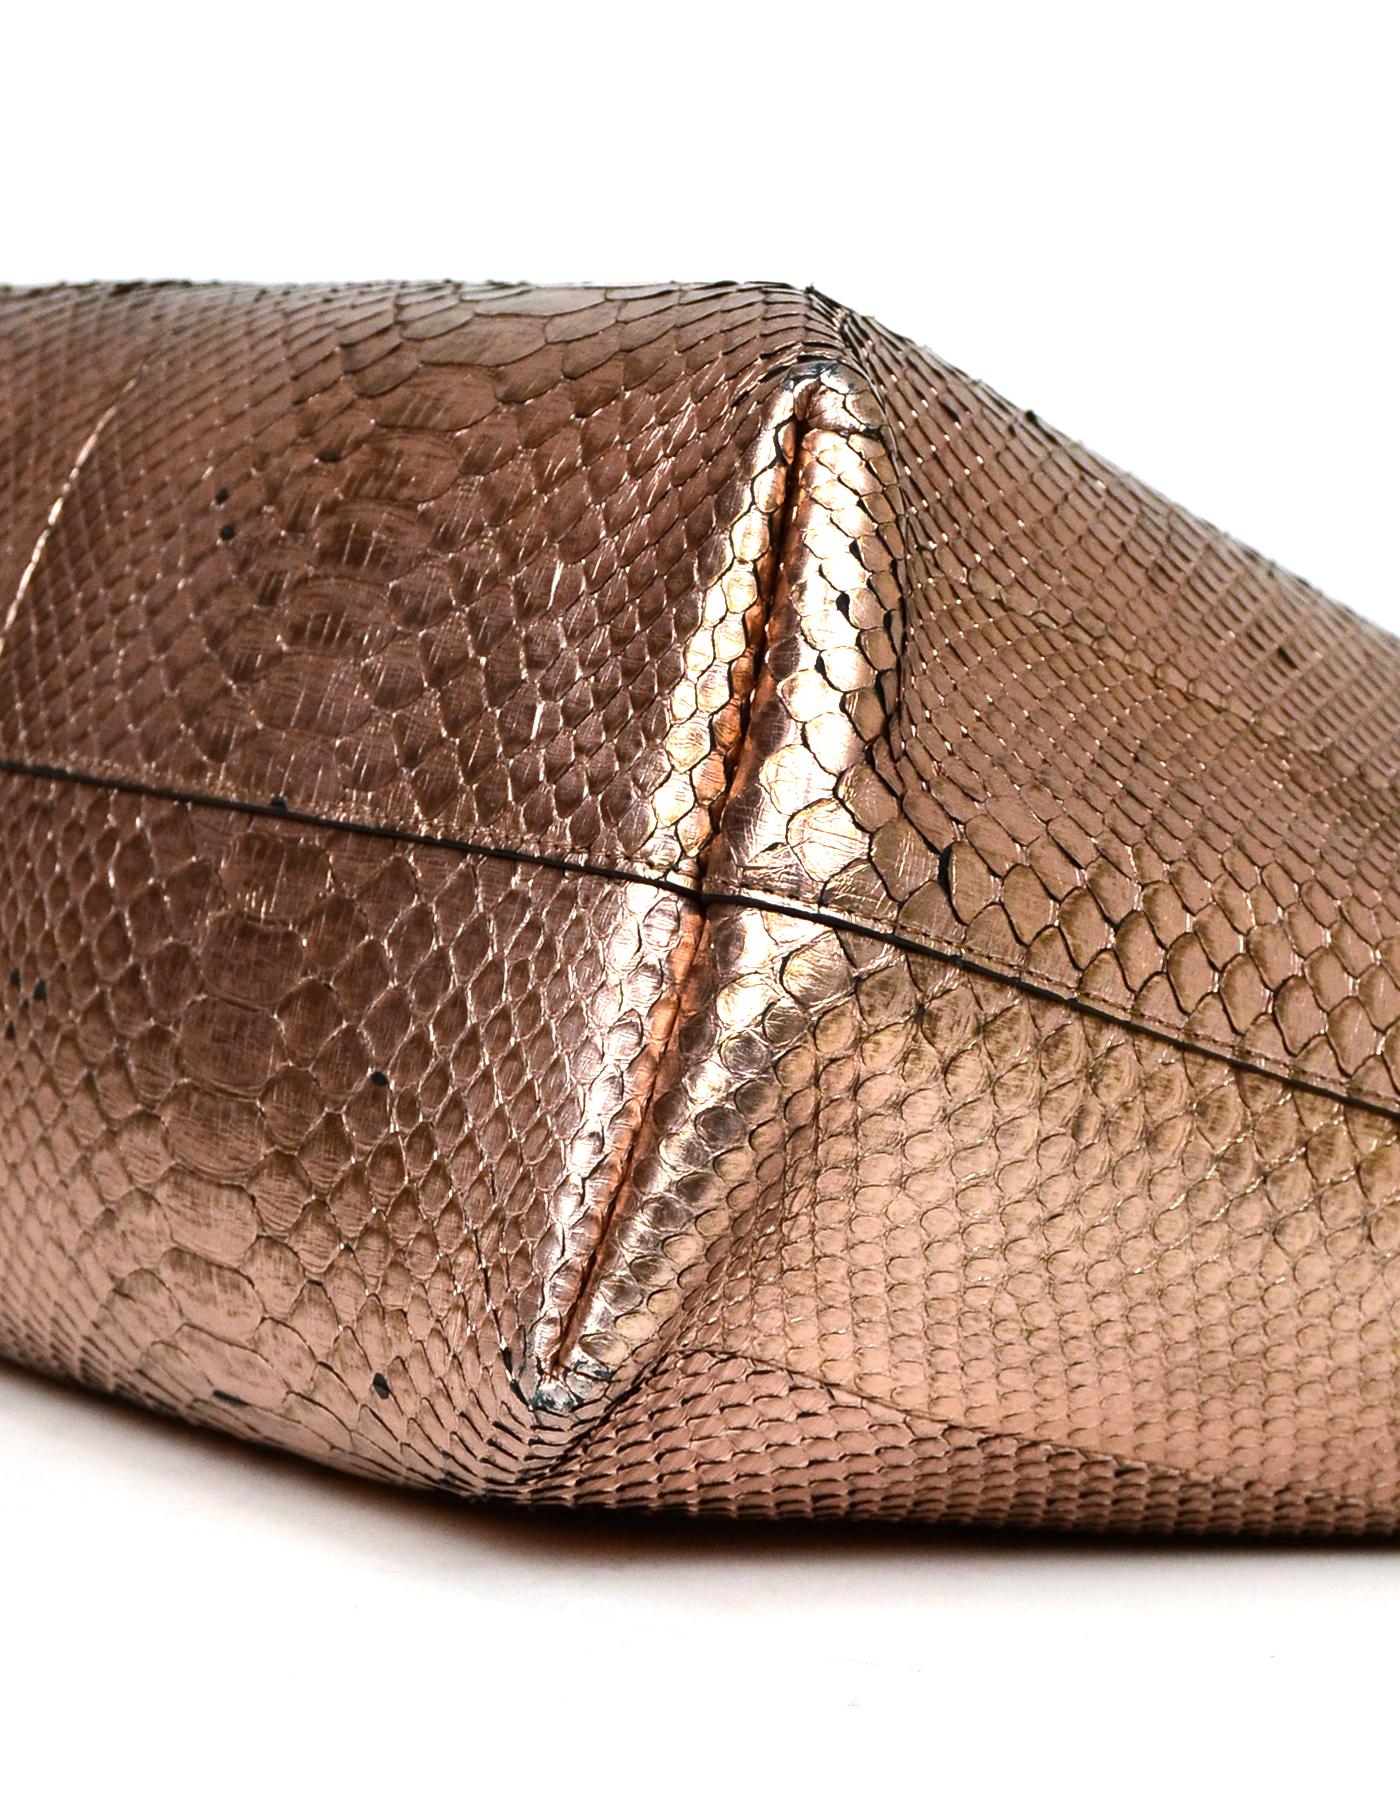 snakeskin metallic bag